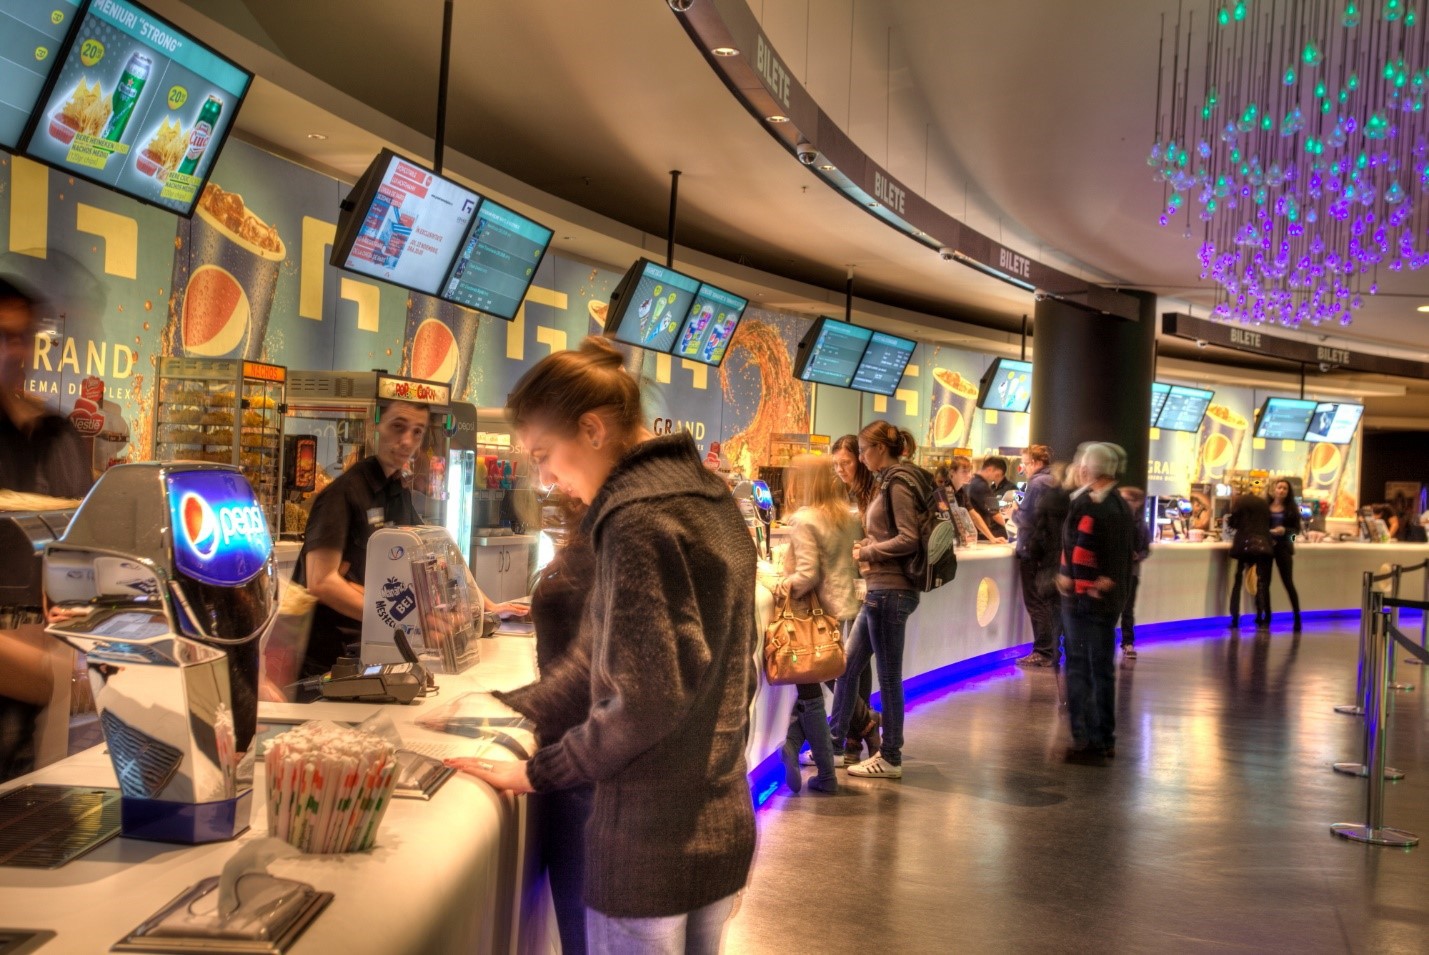 Tranzacţia se confirmă: Gigantul austriac Cineplexx cumpără Grand Cinema & more din Băneasa Shopping City 